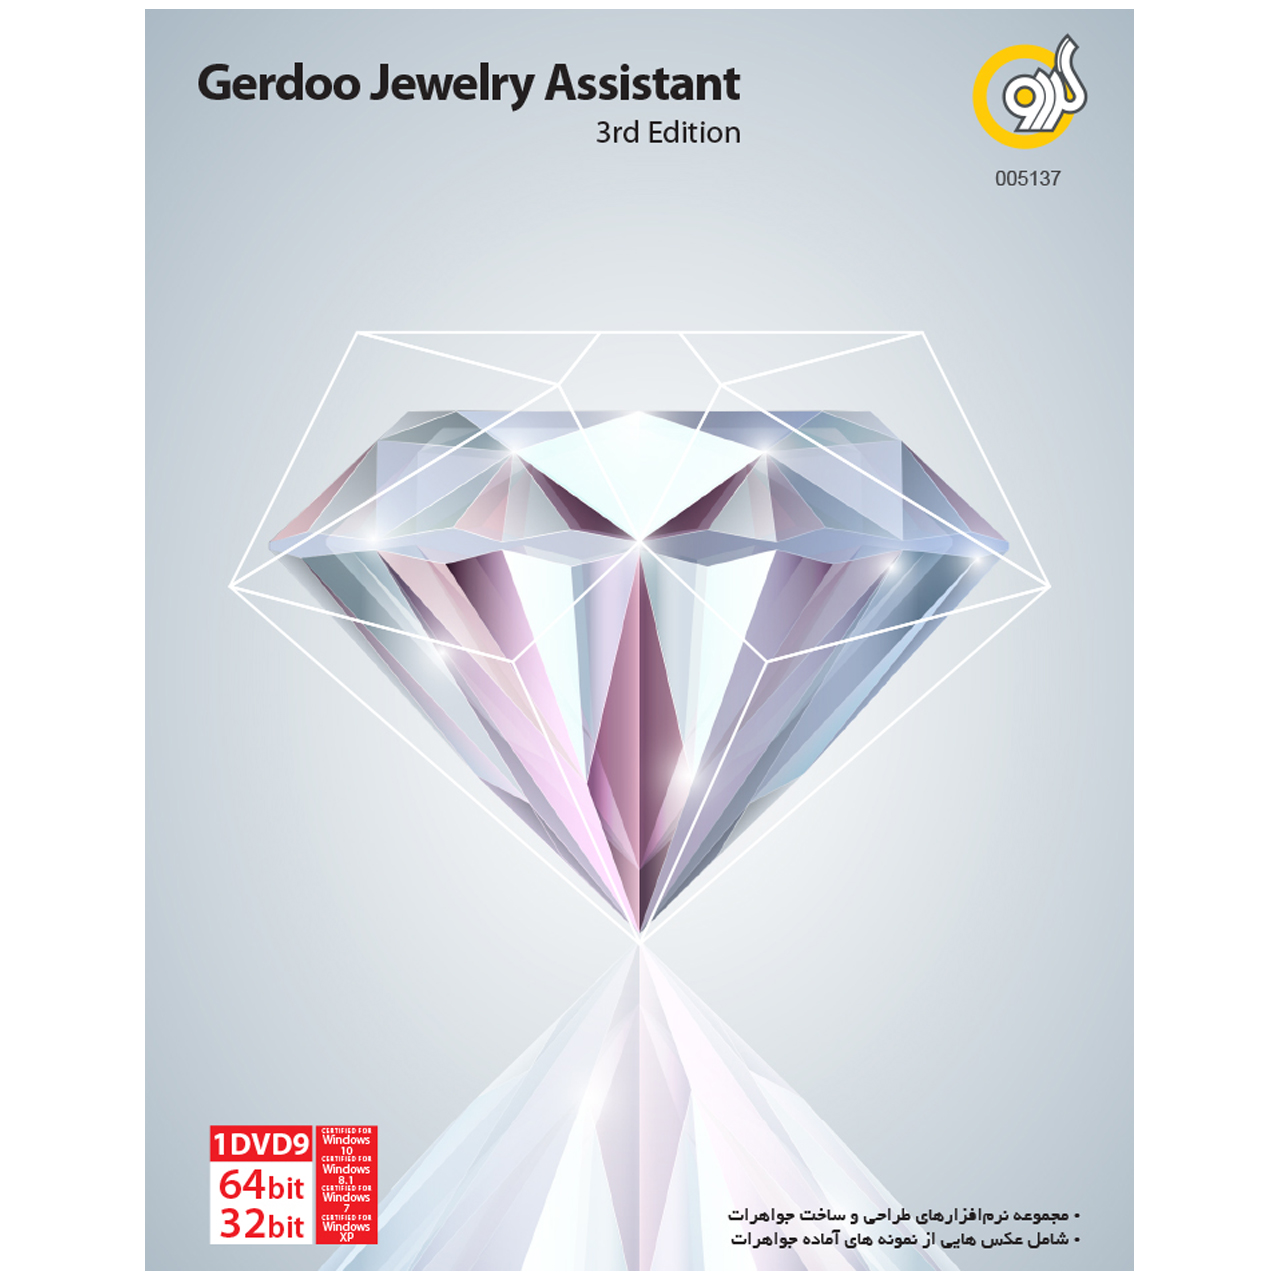 نرم افزار گردو Jewelry Assistant 3rd Edition